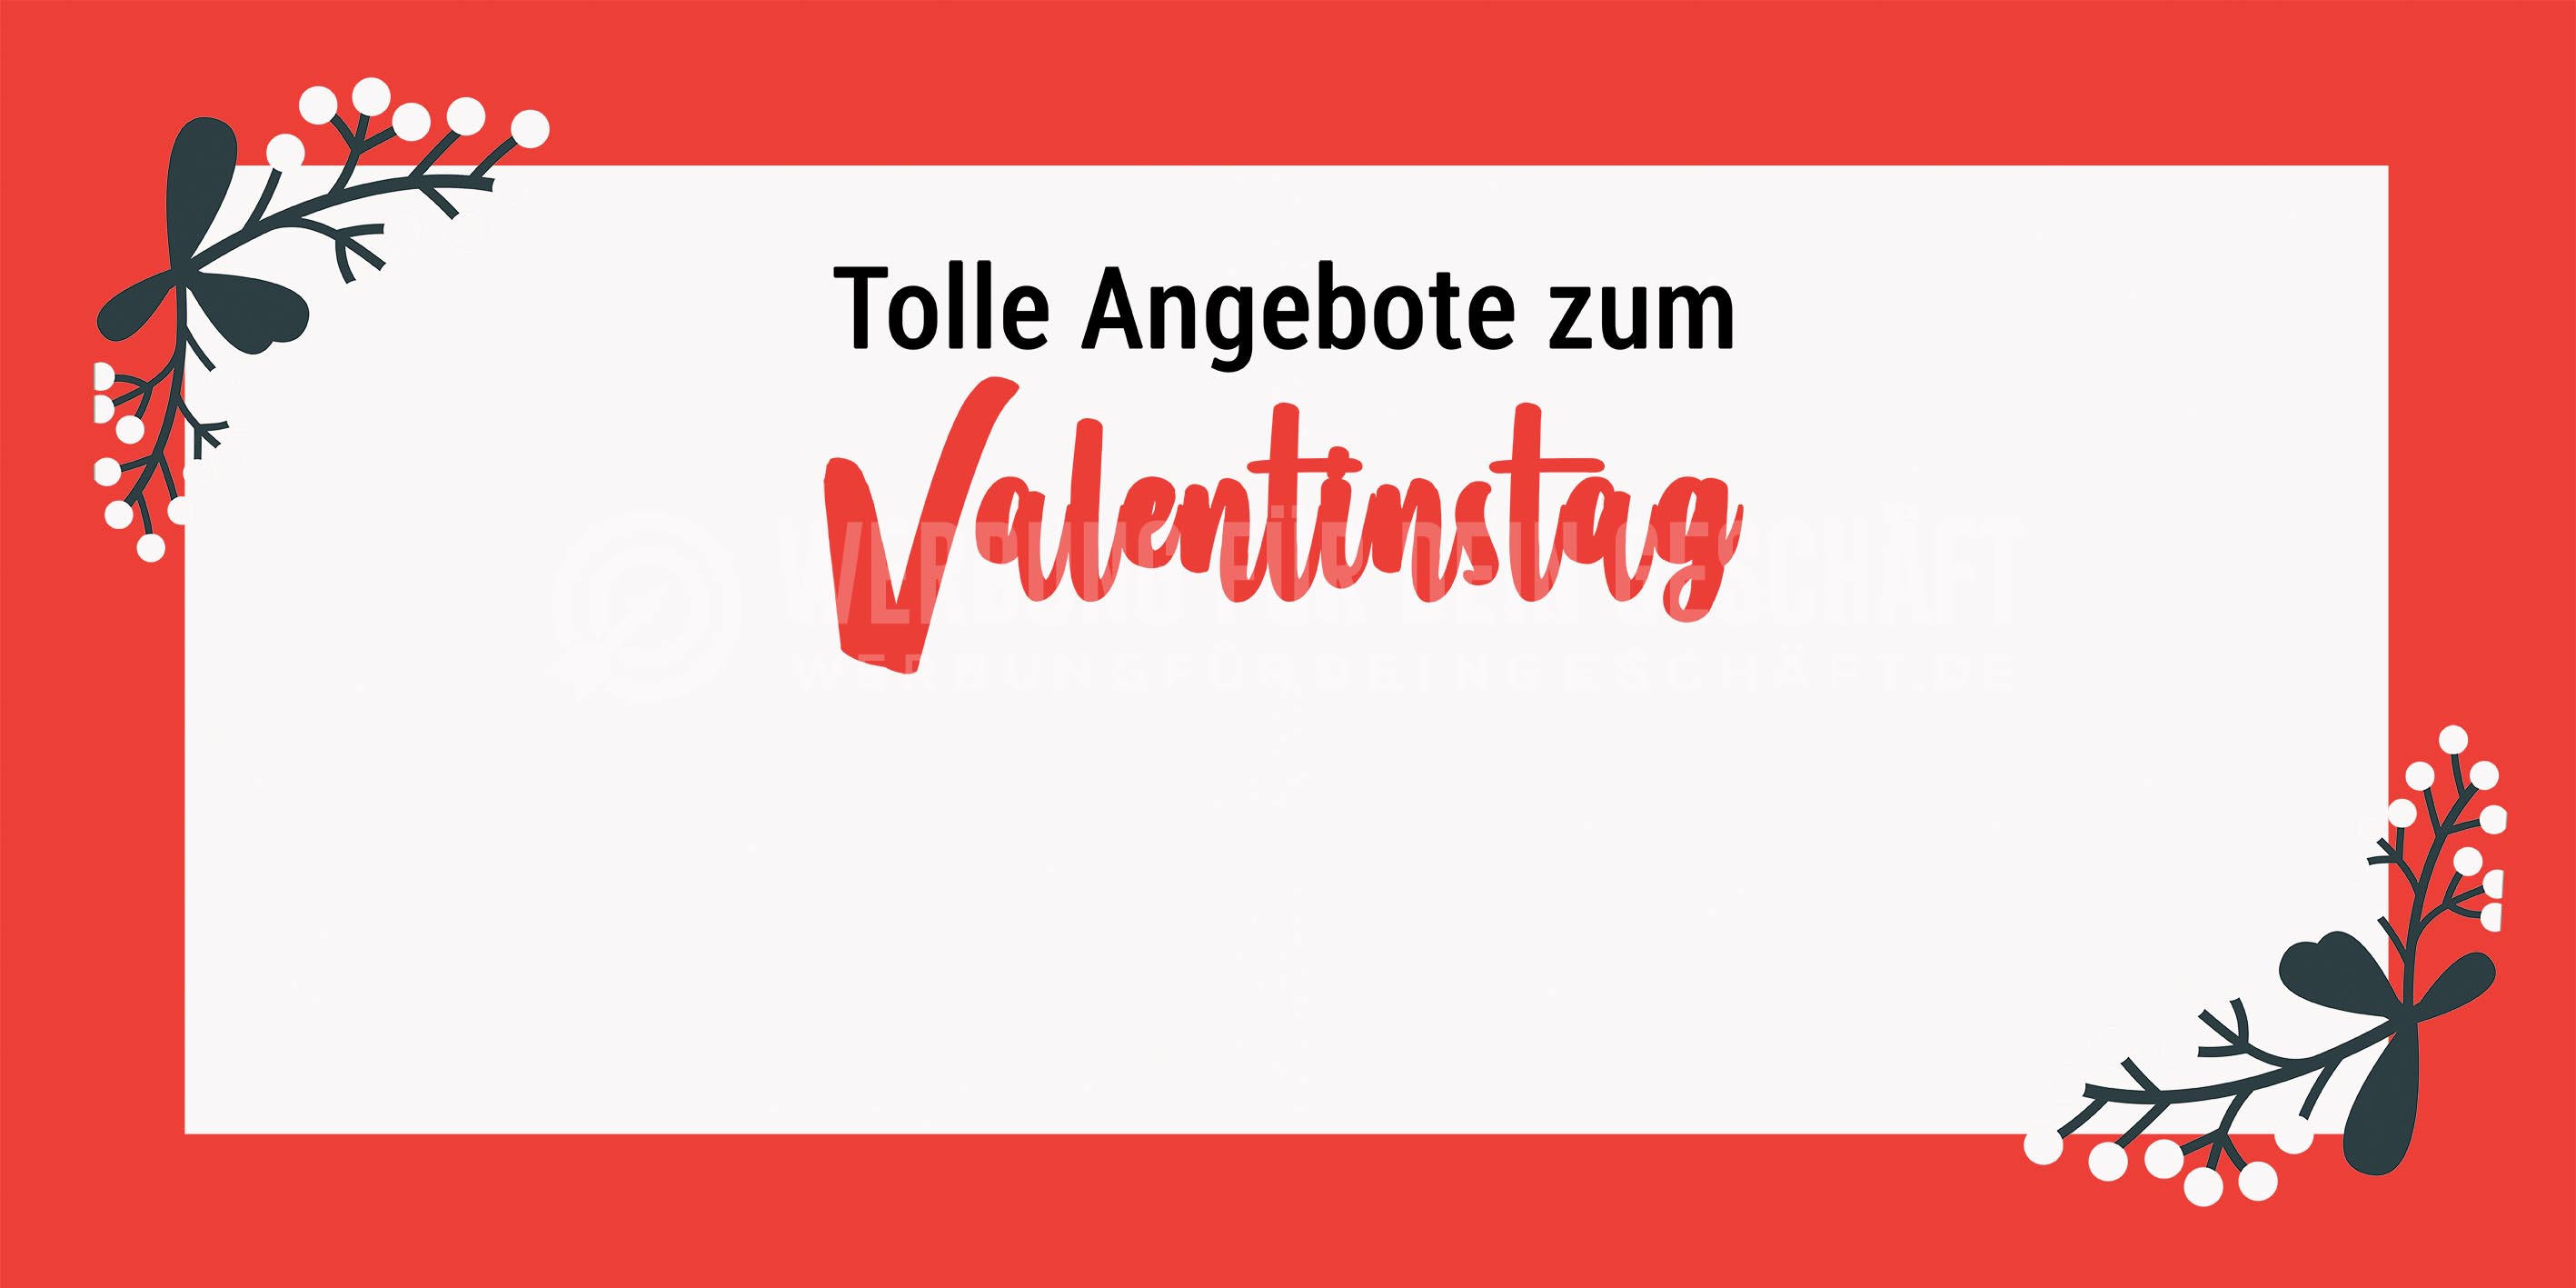 2:1 | Angebote zum Valentinstag Poster | Werbebanner für Valentinstag | 2 zu 1 Format